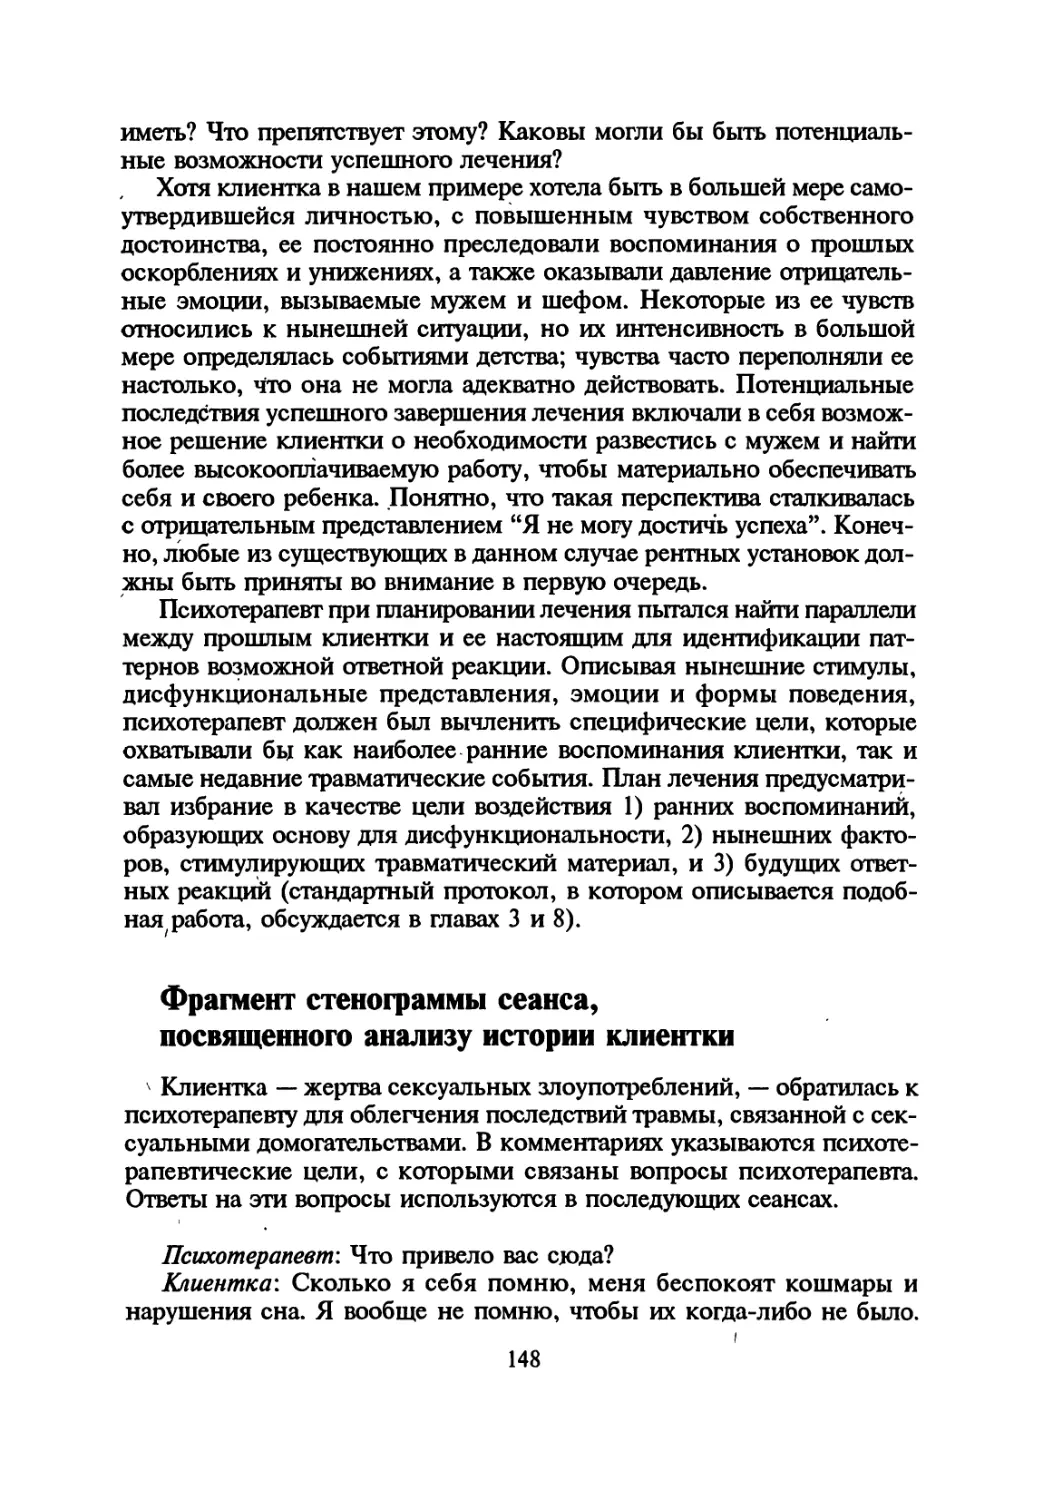 Фрагмент стенограммы сеанса, посвященного анализу истории клиентки